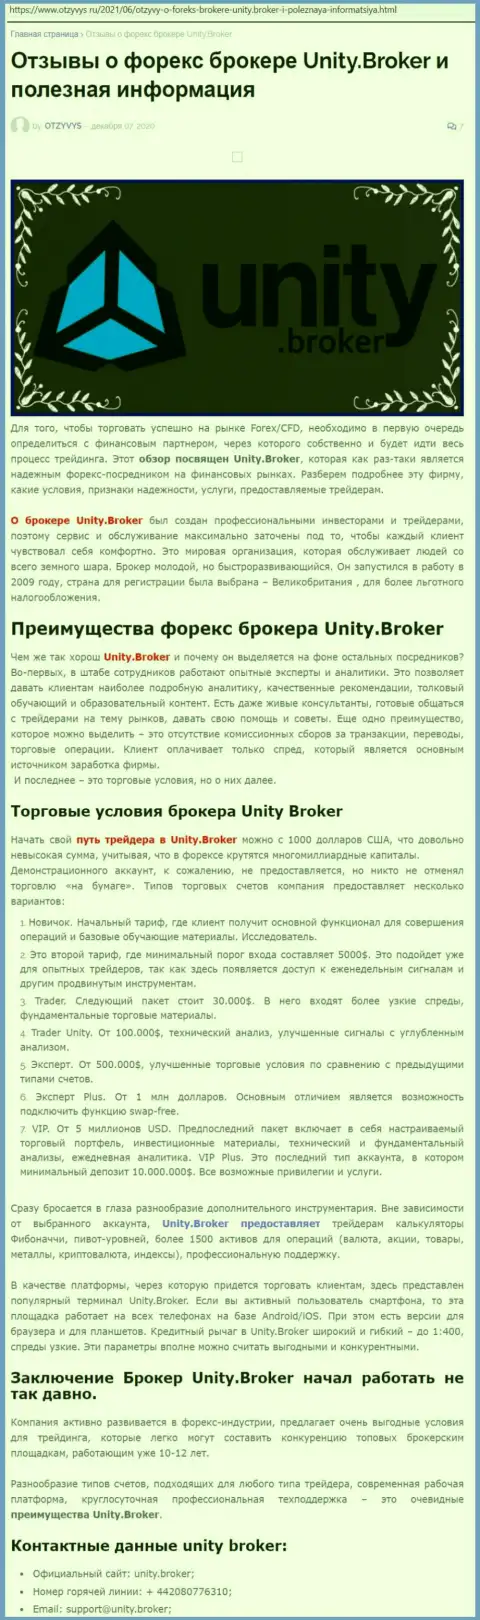 Статья об форекс-дилере Unity Broker на сайте Otzyvys Ru